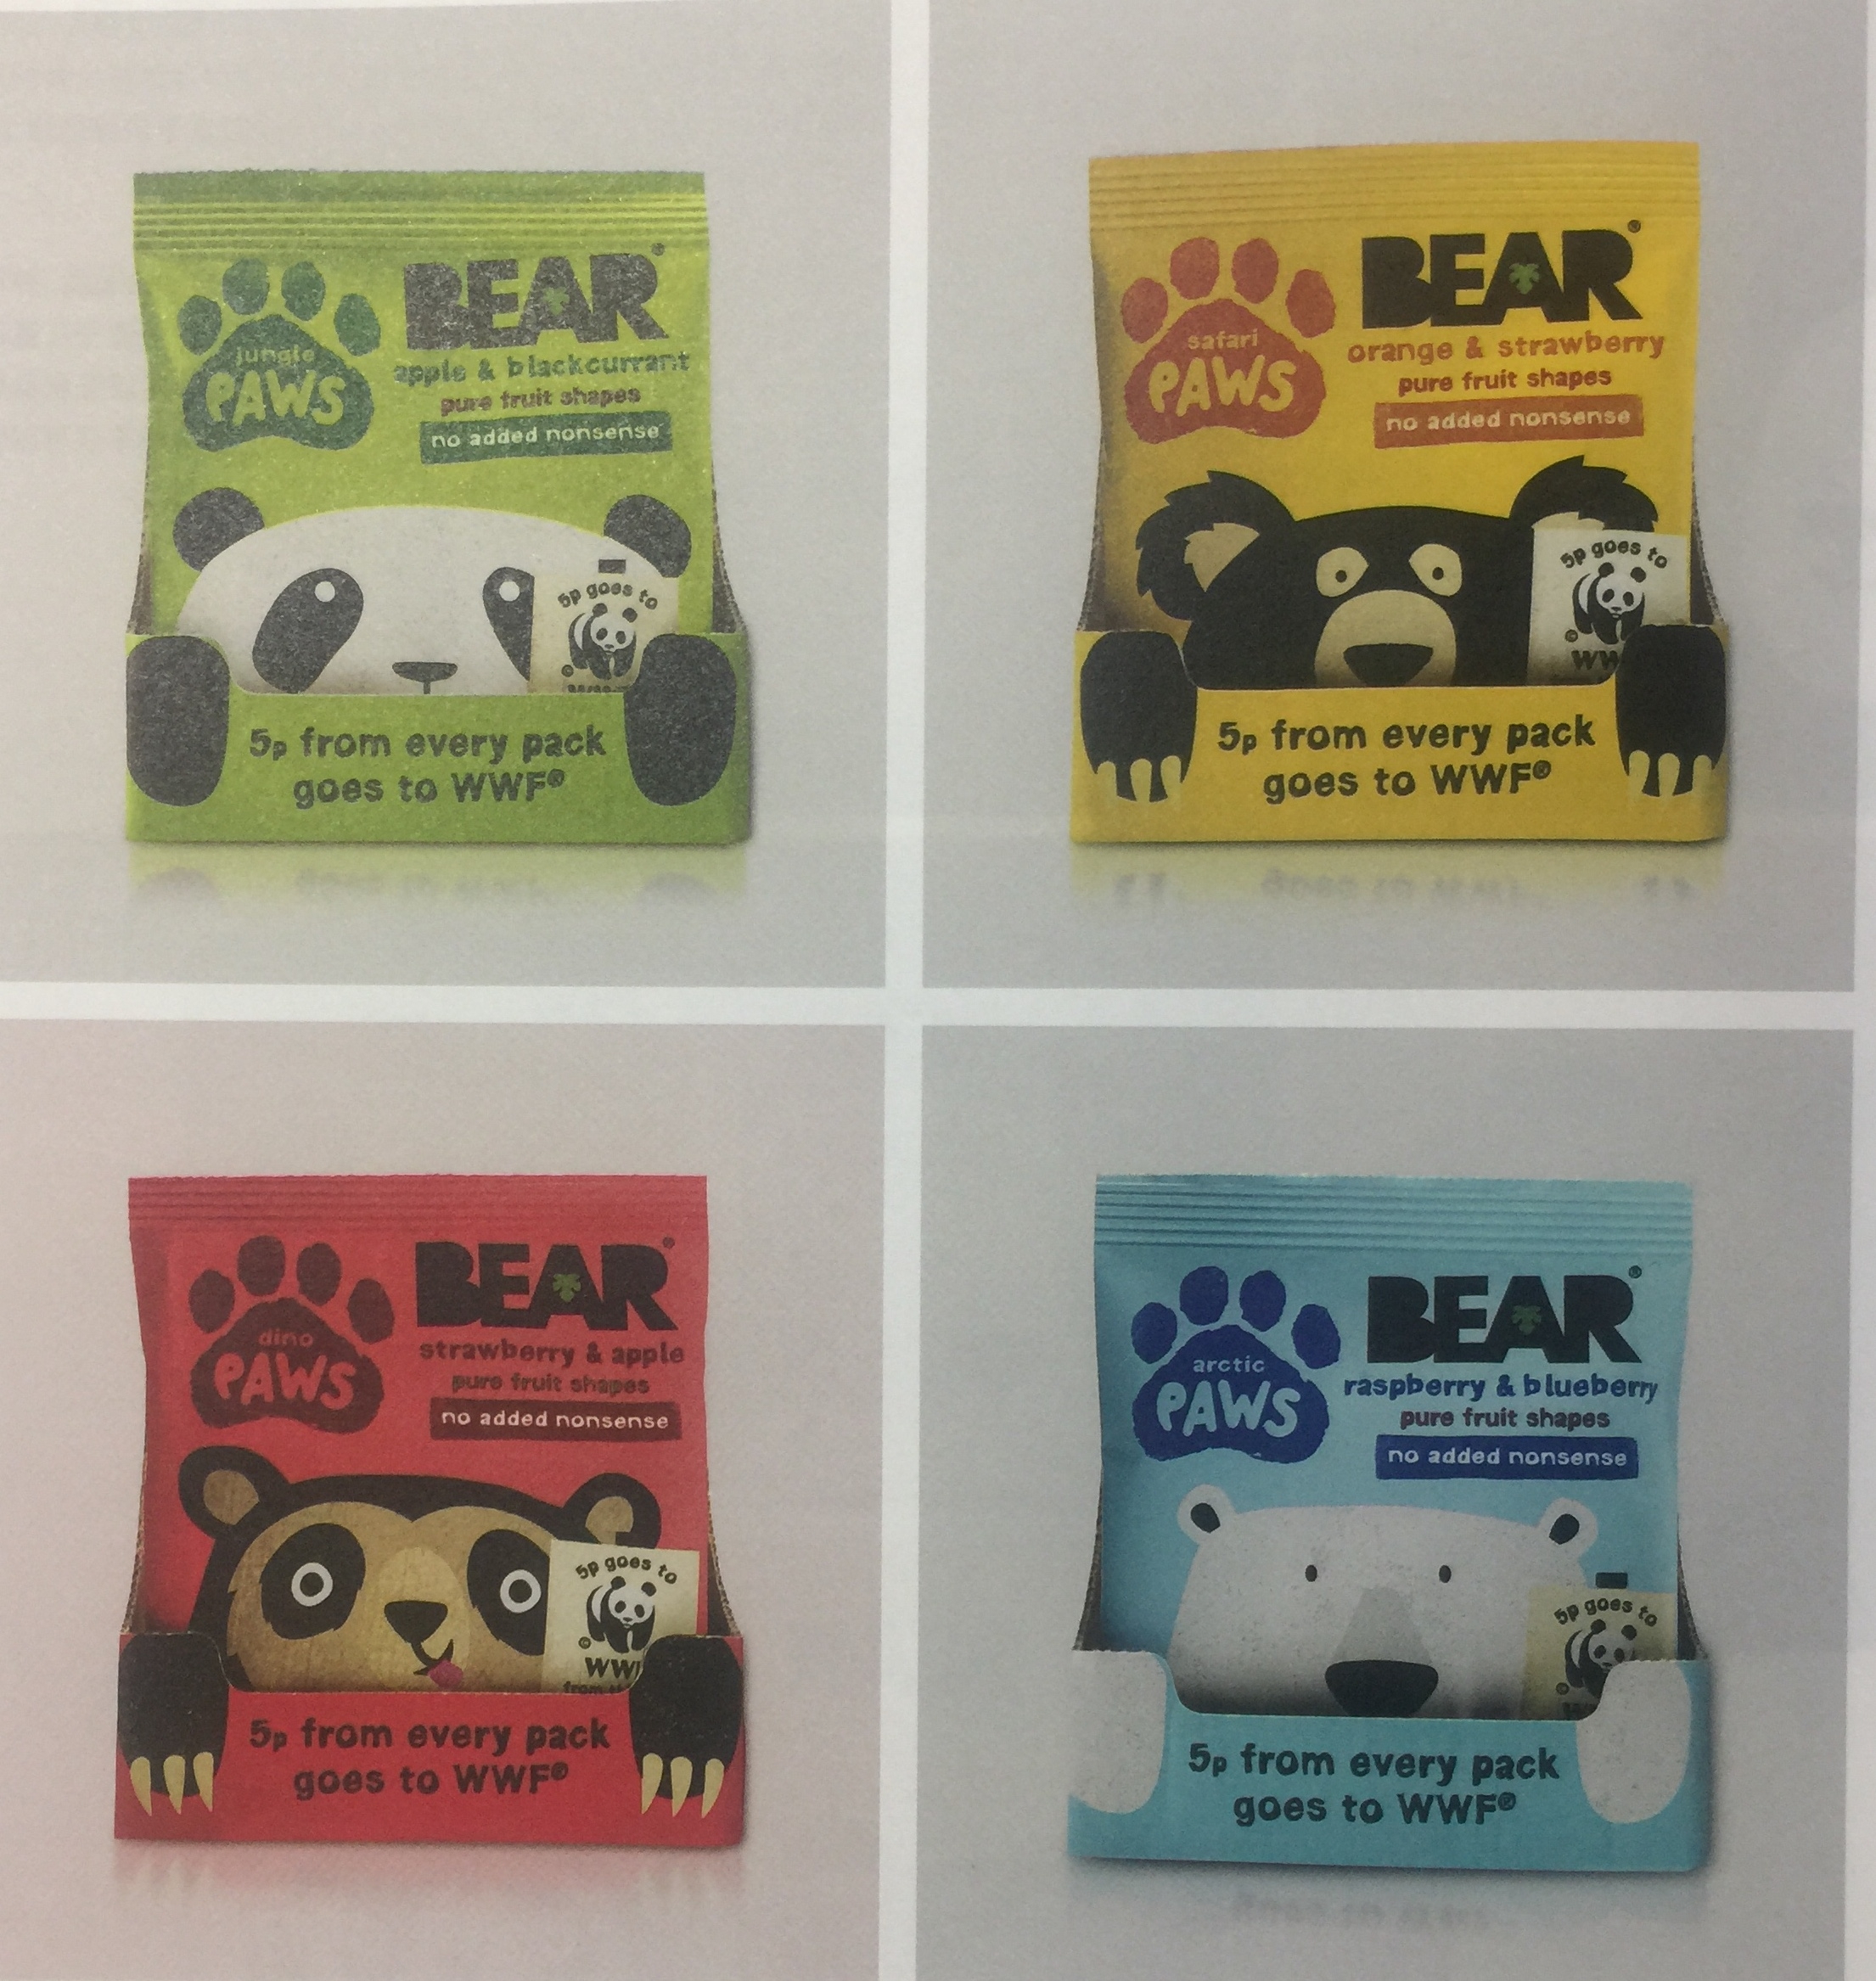 限量版的眼镜熊、北极熊、懒熊和熊猫水果干包装设计